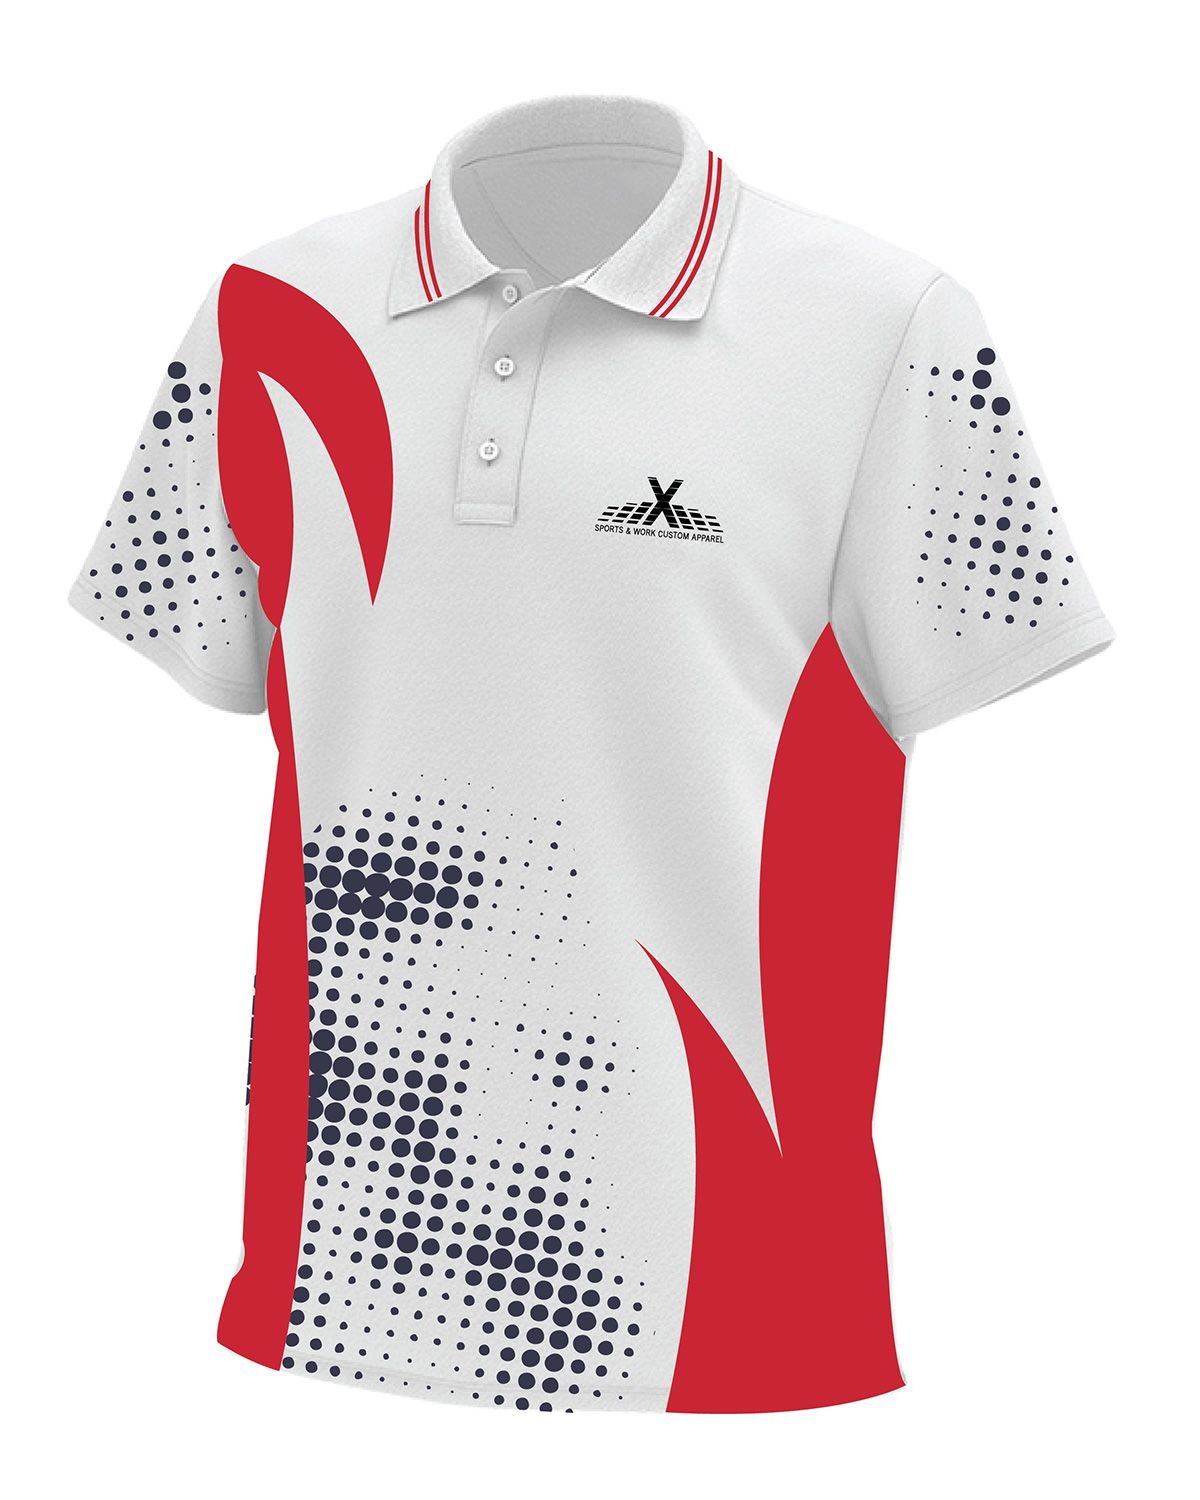 AthleisureX Full Custom Polo Shirt - For Men